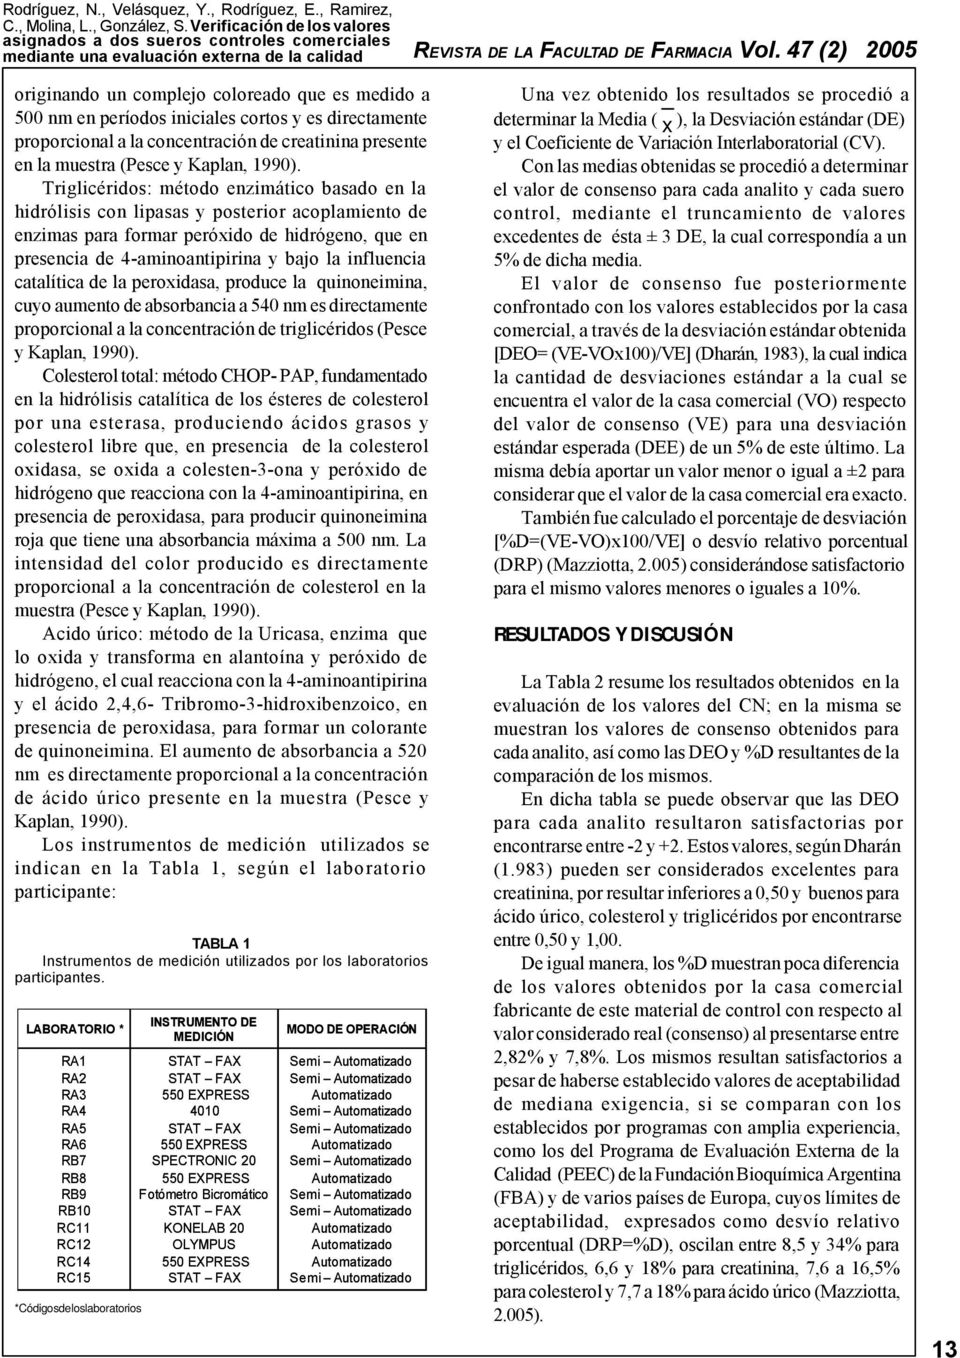 catalítica de la peroxidasa, produce la quinoneimina, cuyo aumento de absorbancia a 540 nm es directamente proporcional a la concentración de triglicéridos (Pesce y Kaplan, 1990).